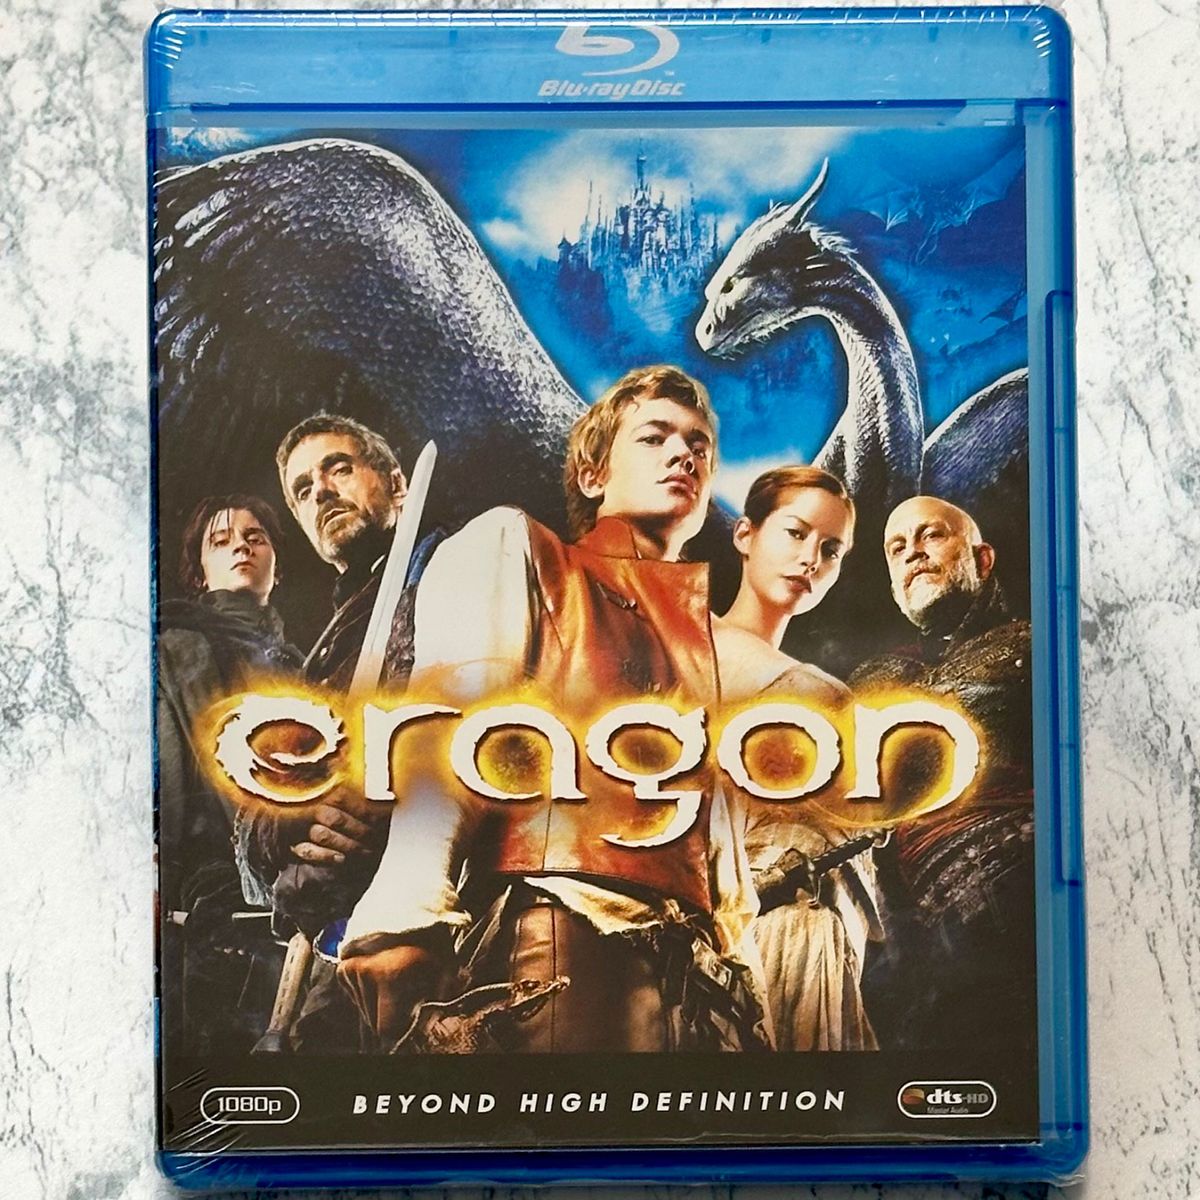 新品未開封 エラゴン 遺志を継ぐ者 Blu-ray セル版